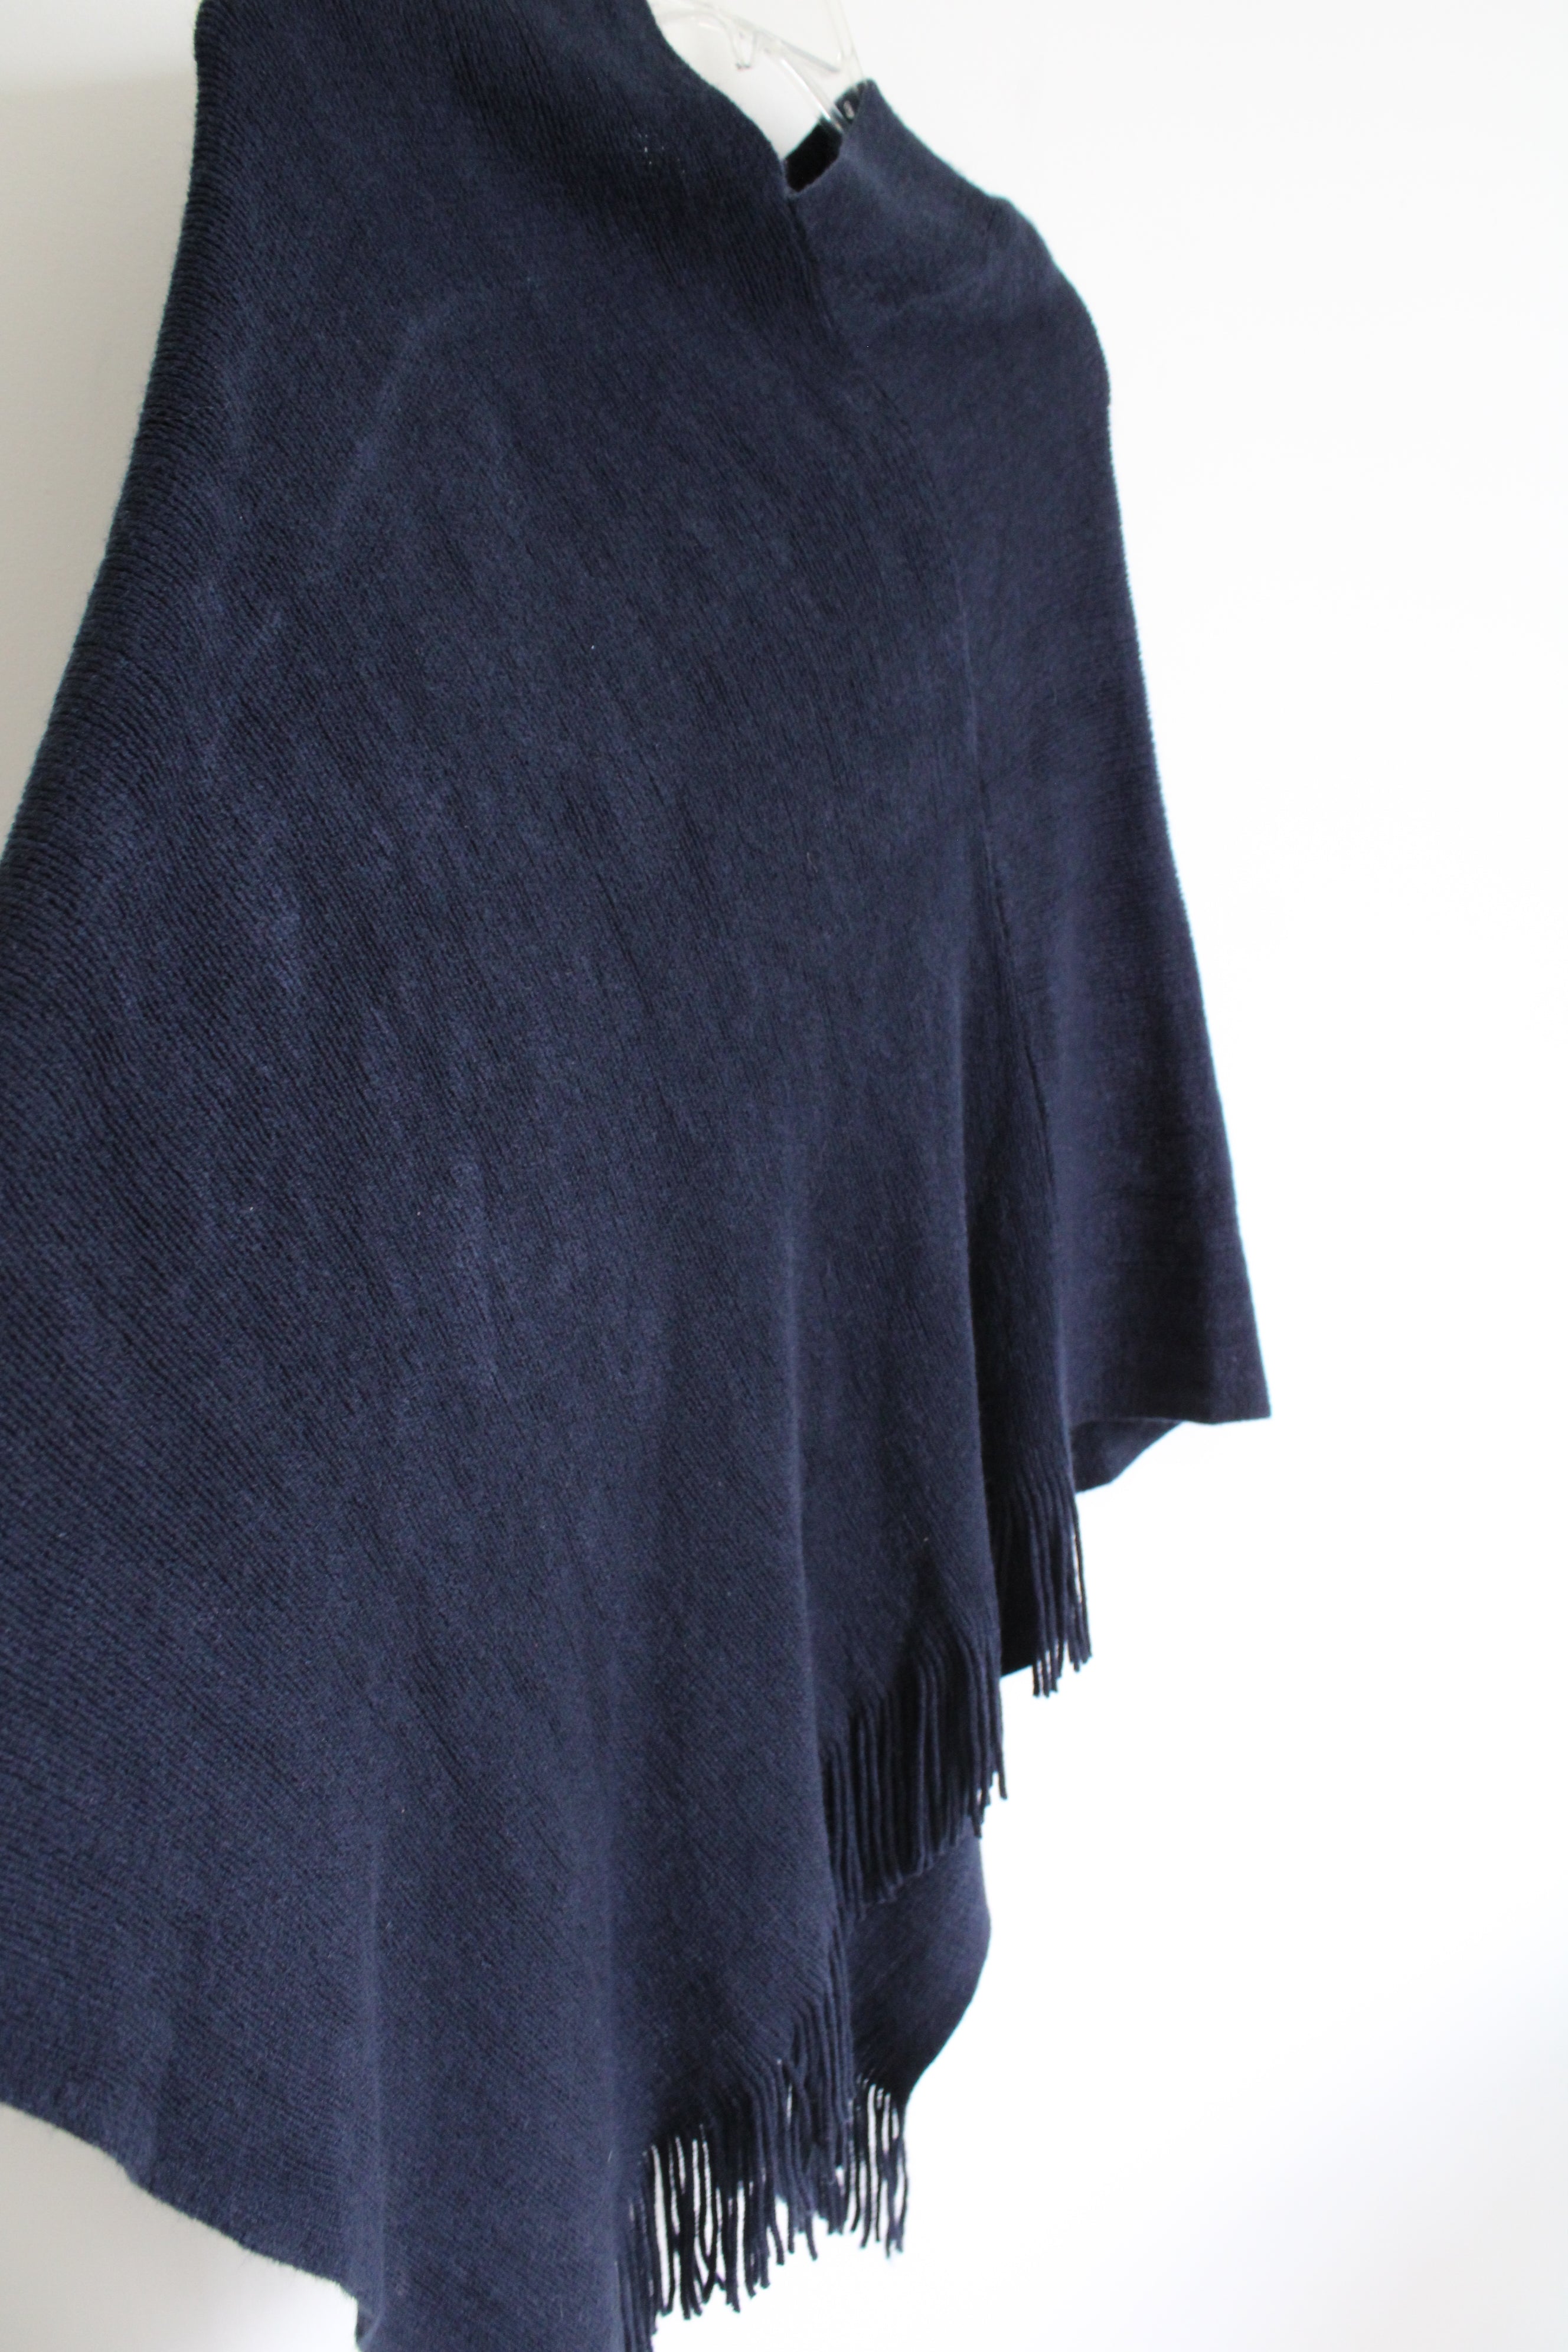 LOFT Dark Navy Blue Knit Poncho Sweater | One Size